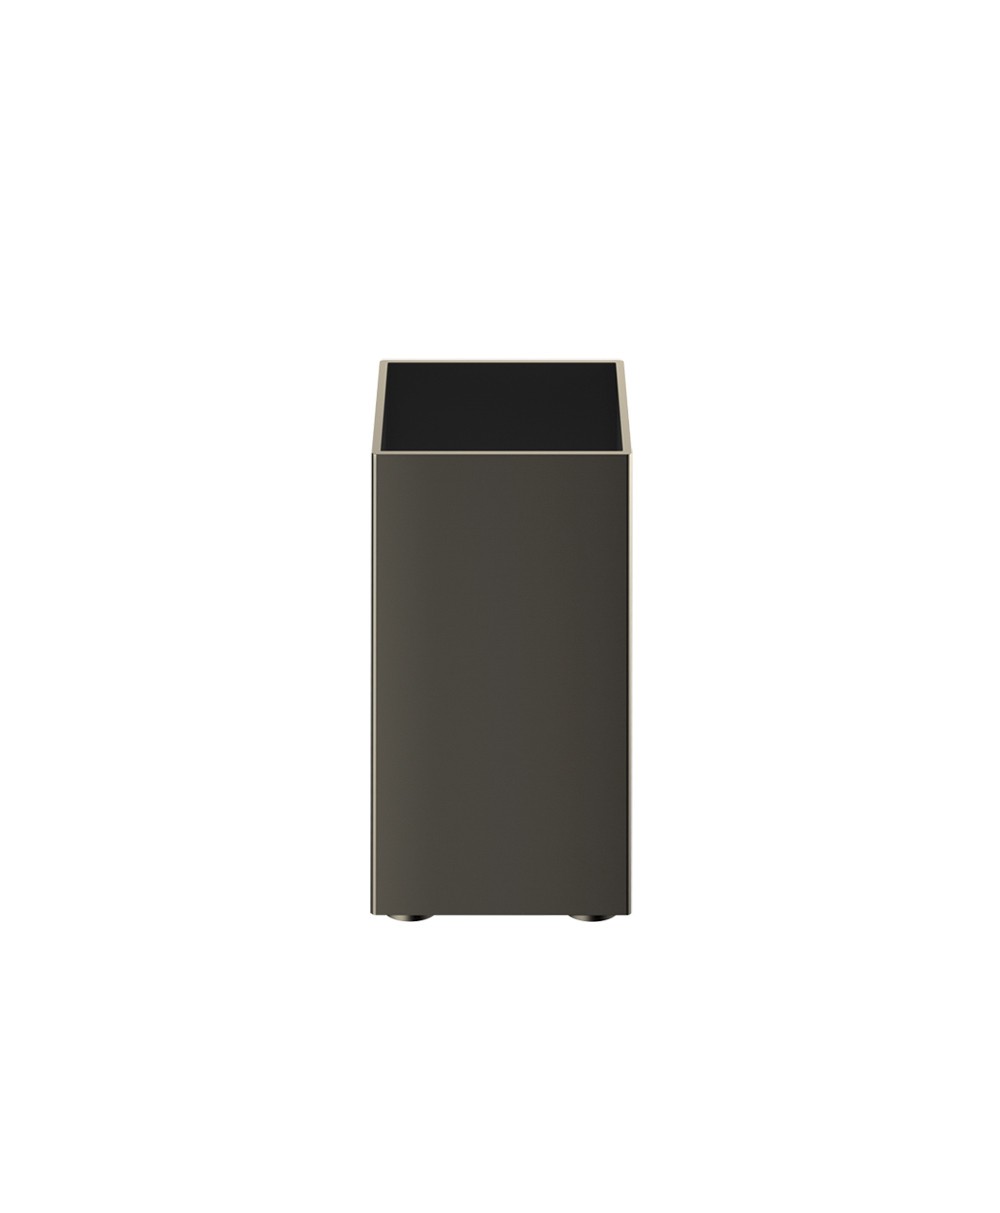 Hier abgebildet ist ein Mehrzweckbehälter von Decor Walther – im Onlineshop RAUM concept store